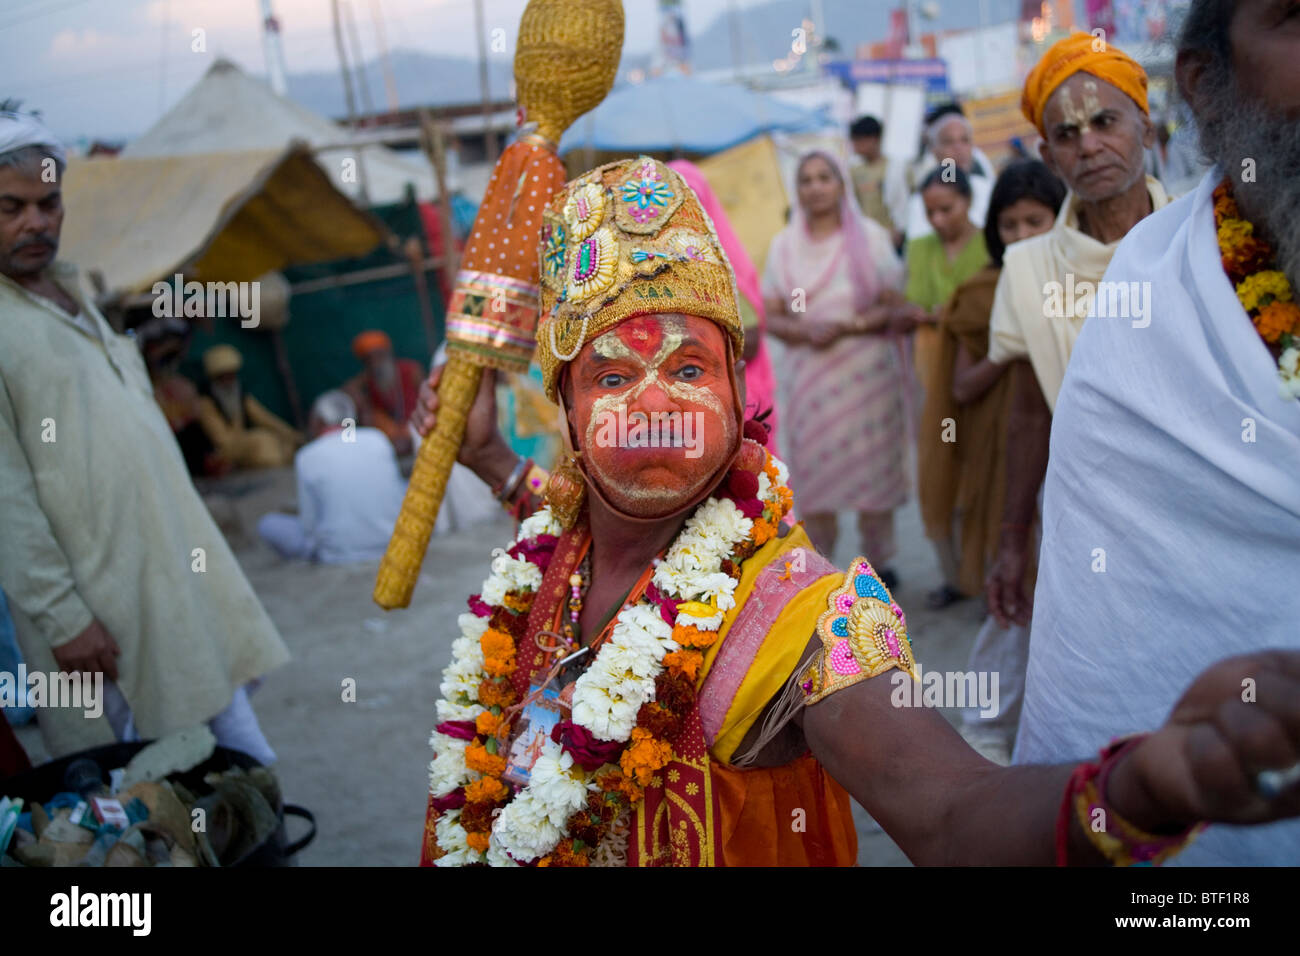 El hombre actúa como el dios Hindú Hanuman durante el Kumbh Mela festival, Haridwar, Uttarakhand, India. Foto de stock